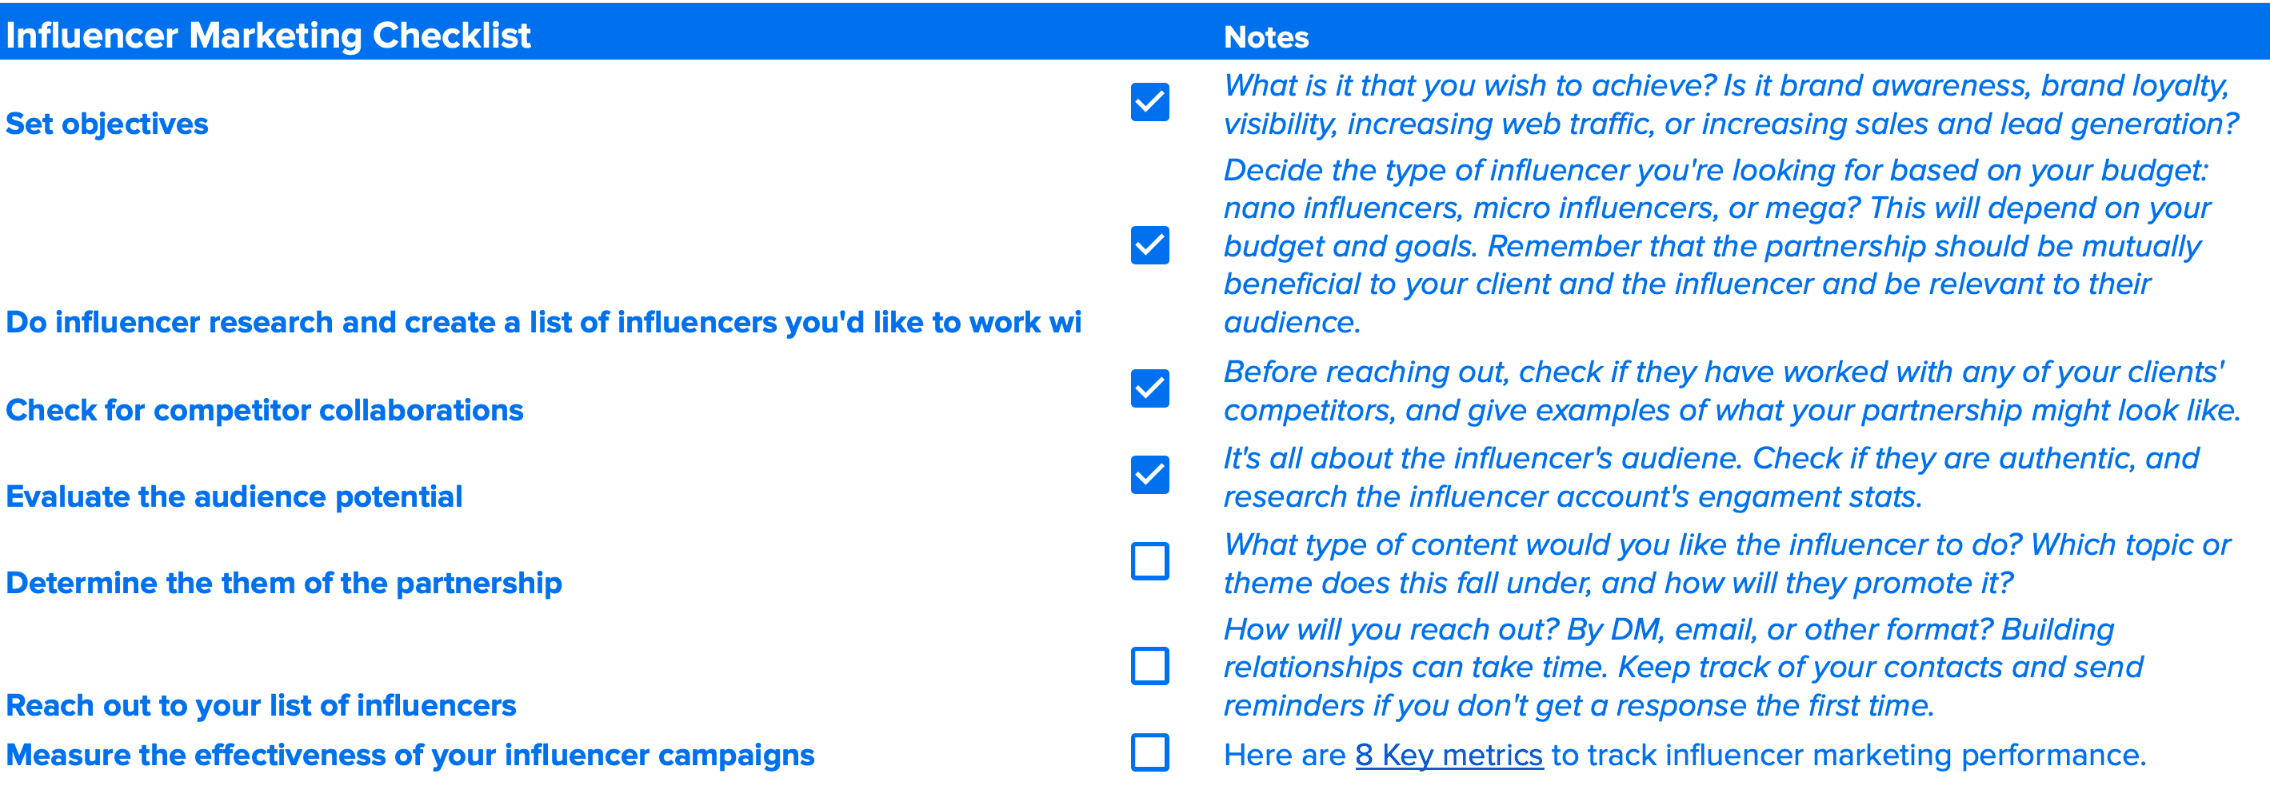 influencer marketing checklist